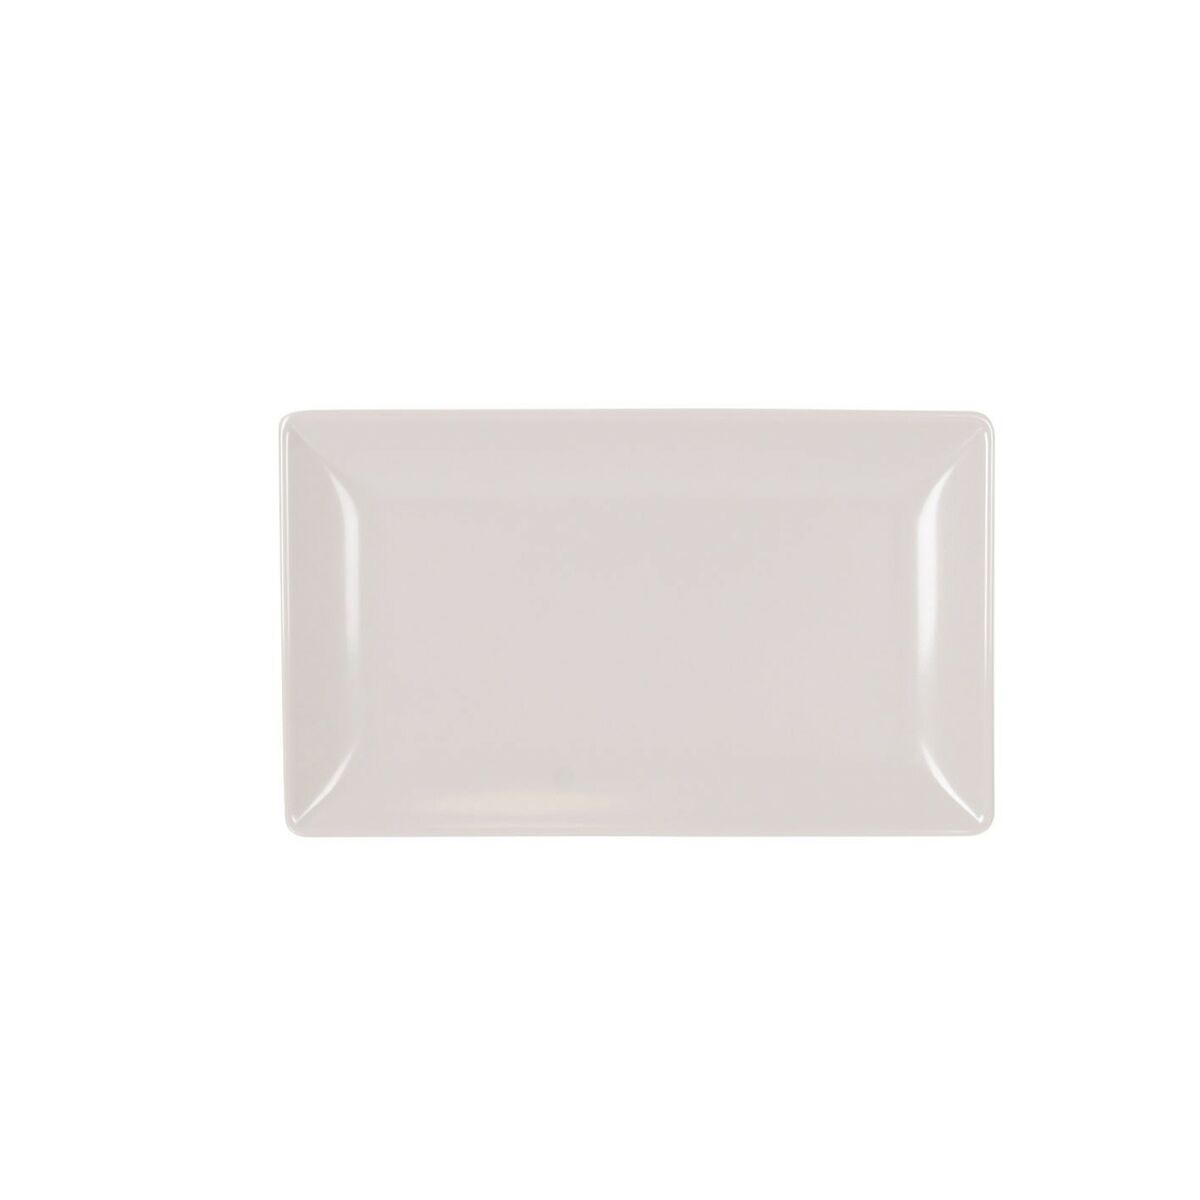 Tablett für Snacks La Mediterránea Weiß 30 x 20 x 2,5 cm (12 Stück)